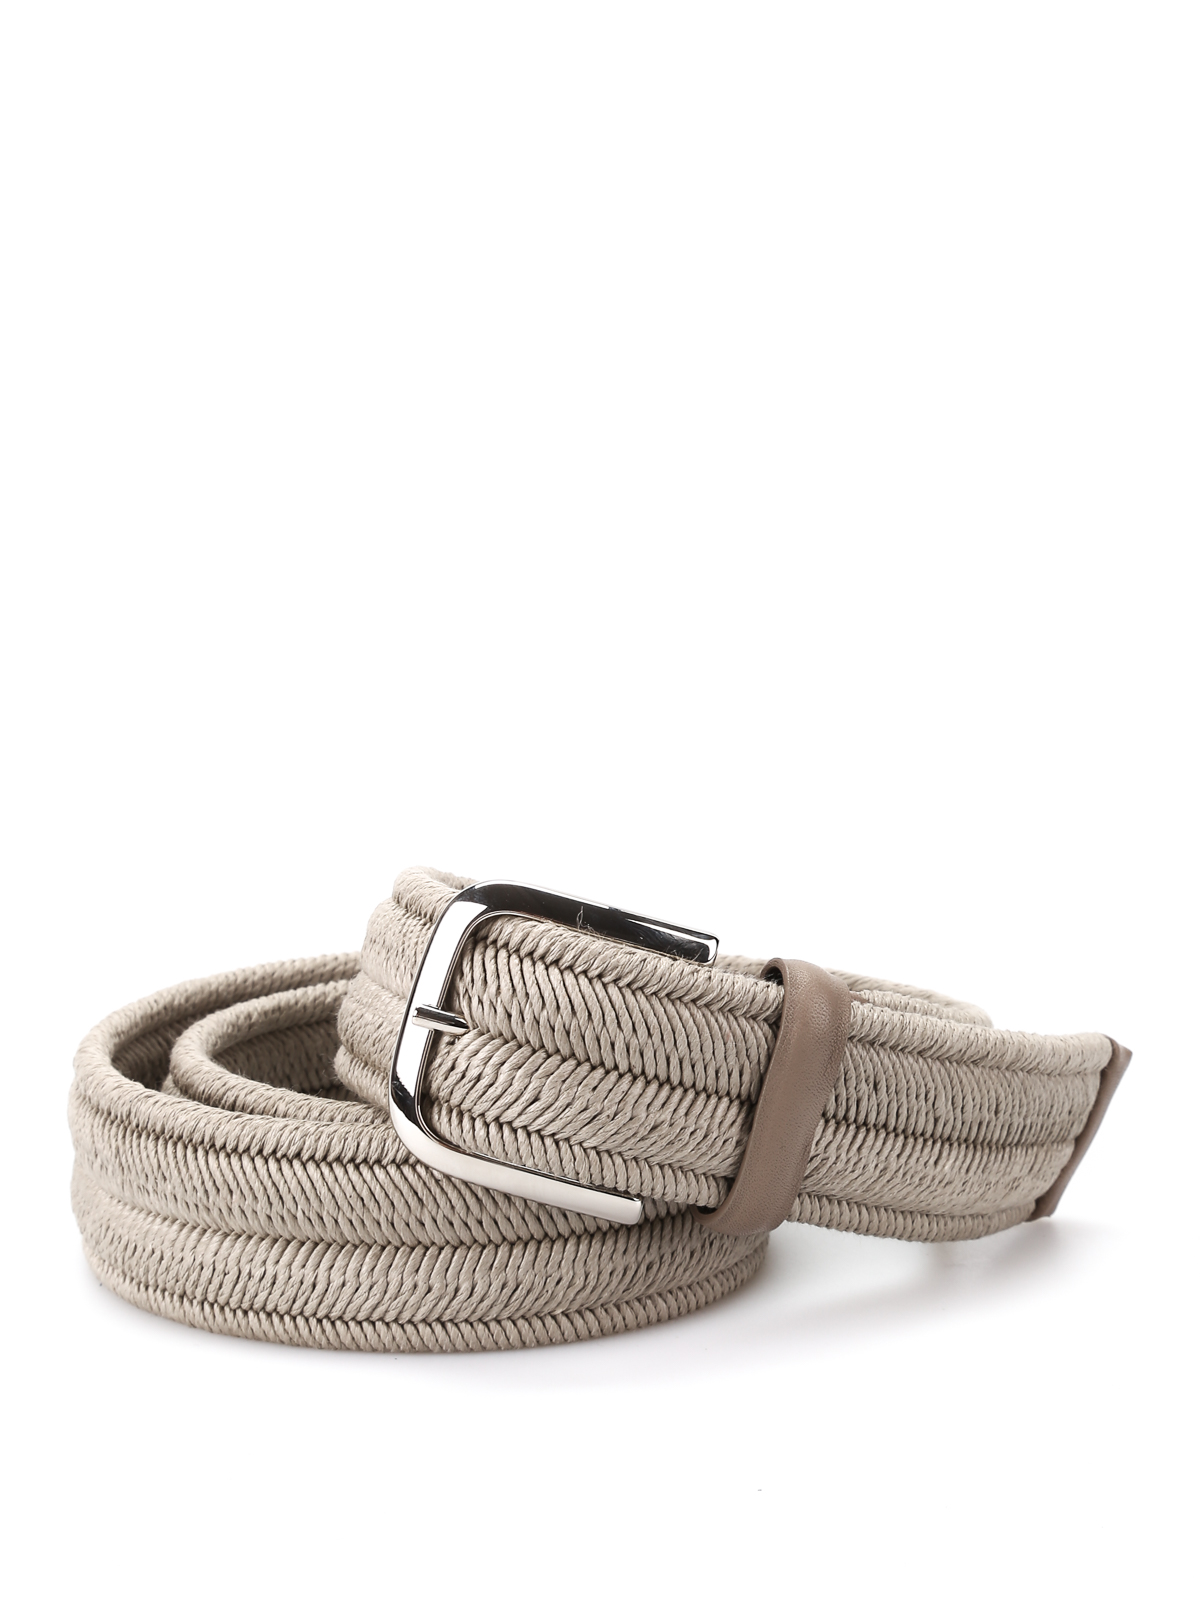 Rope Elast Linen belt by Orciani - belts | Shop online at iKRIX.com